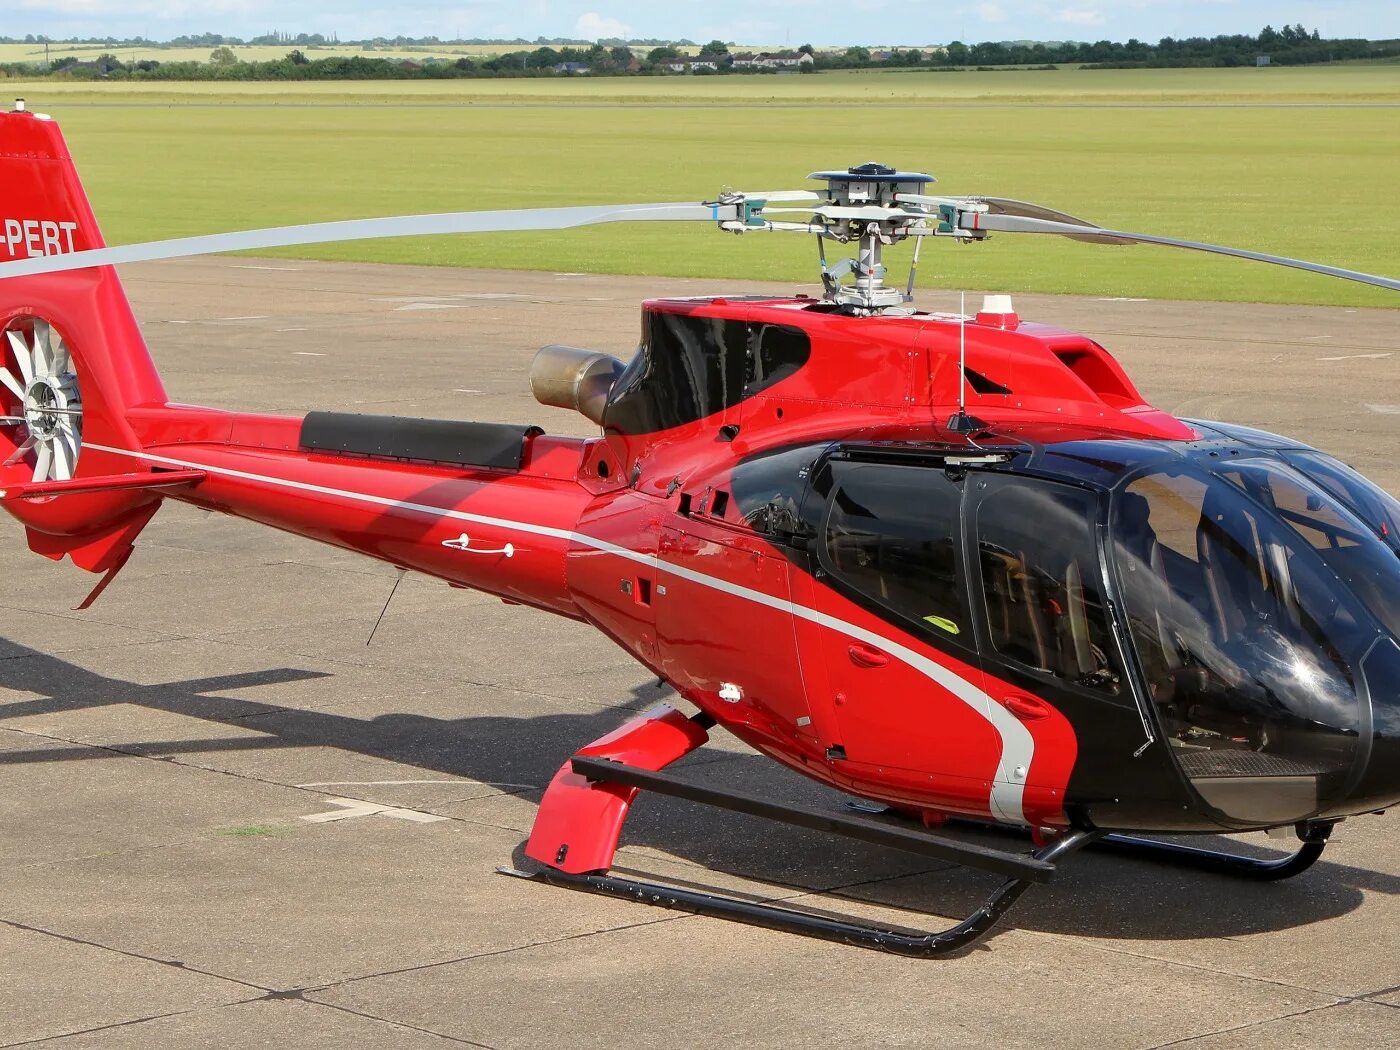 Джетор т2. Eurocopter ec130. Еврокоптер 130. EC 130 вертолет. Eurocopter ec130 т2.